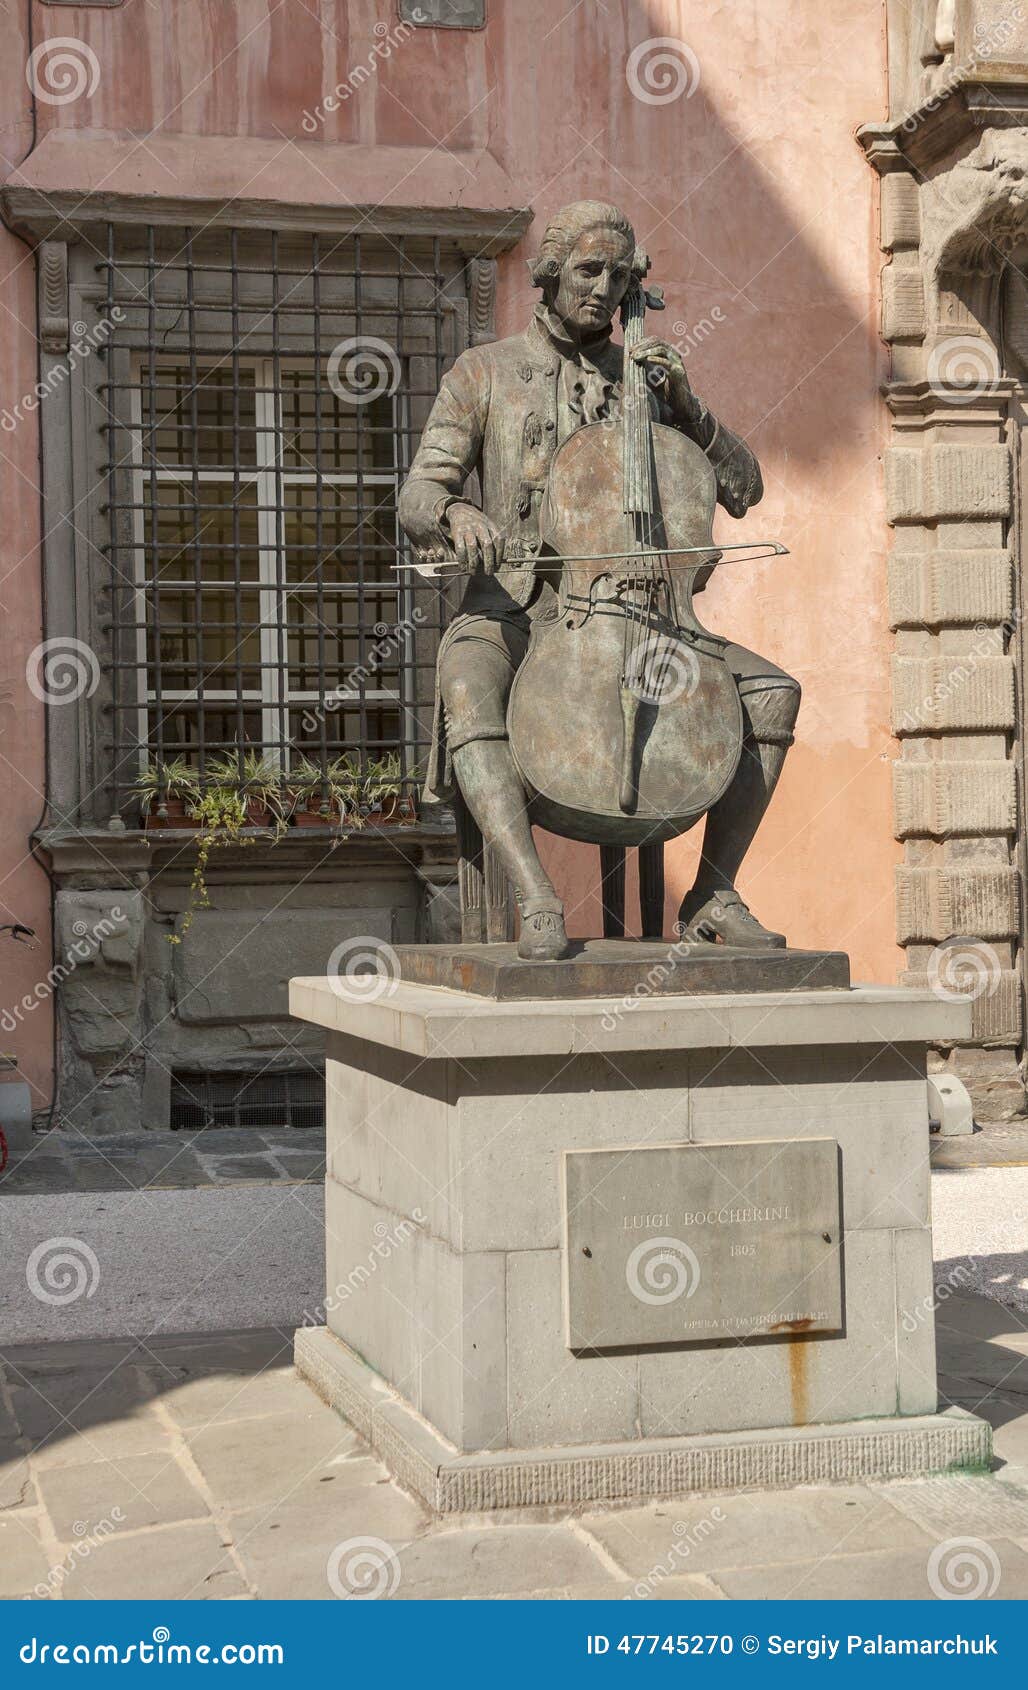 statue of luigi boccherini in lucca, italy